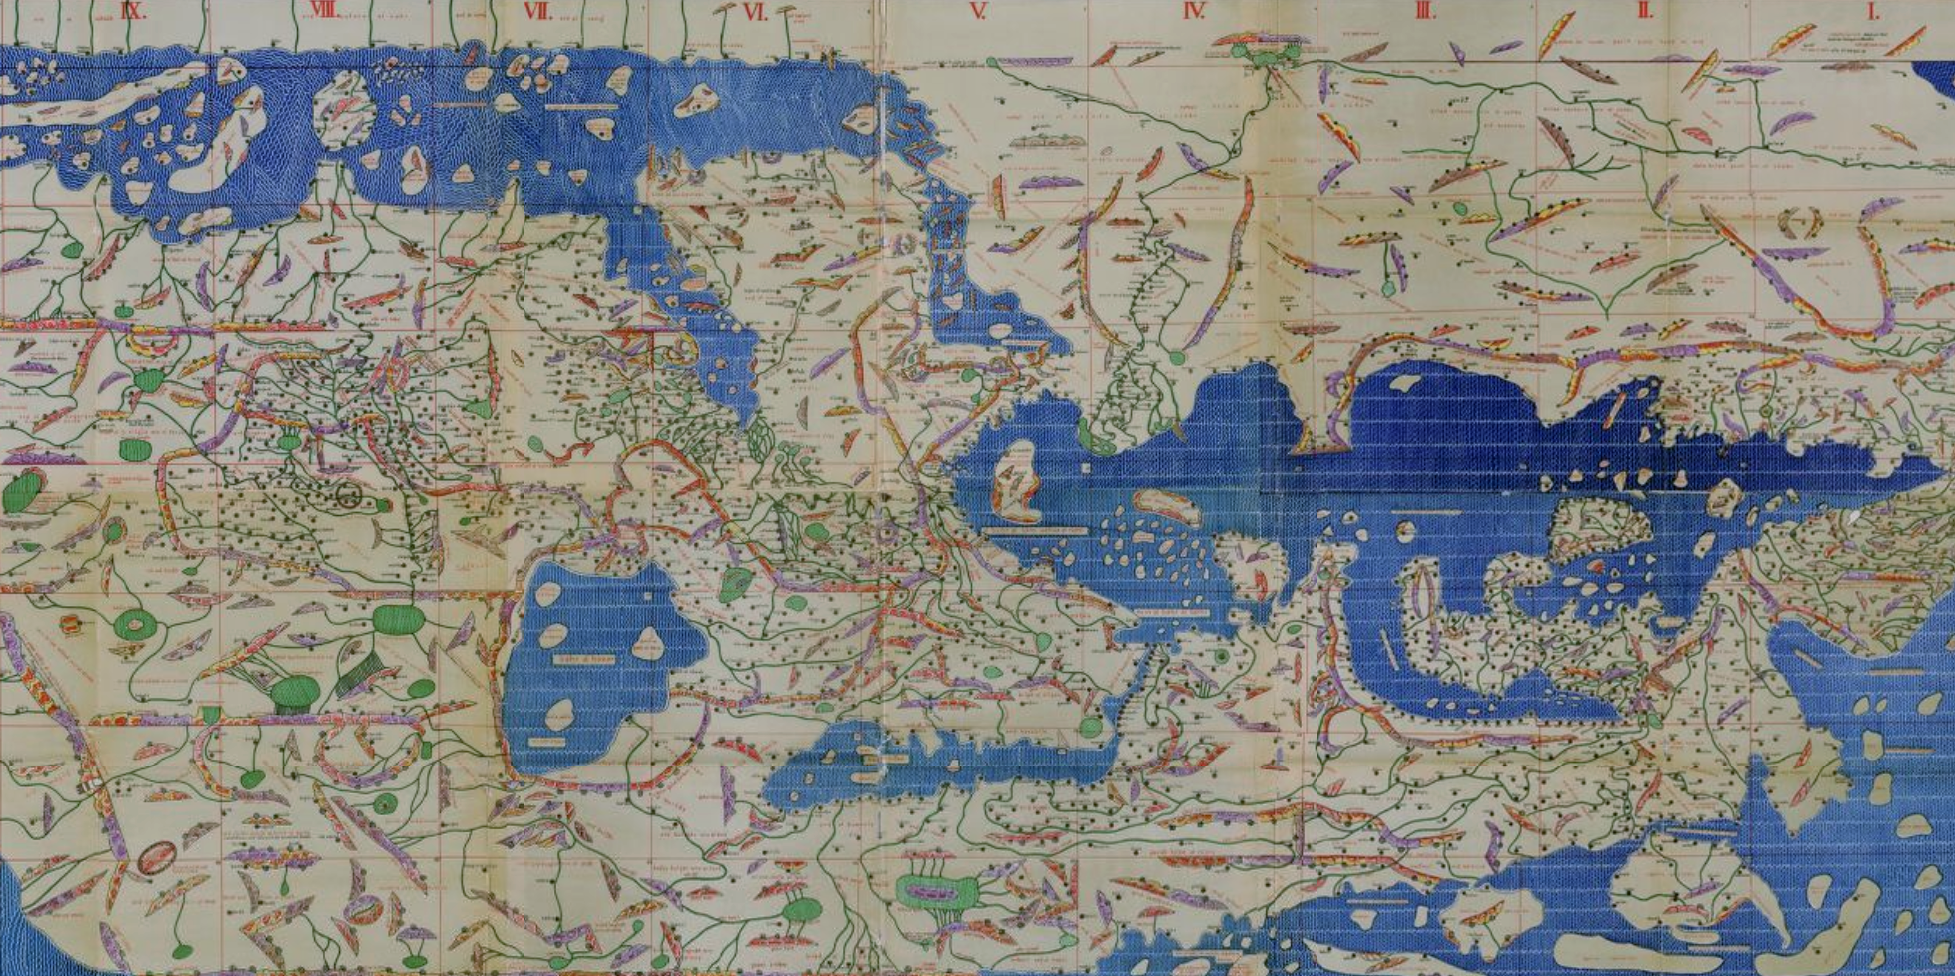 Weltkarte des Idrisi vom Jahr 1154 n. Ch., Charta Rogeriana